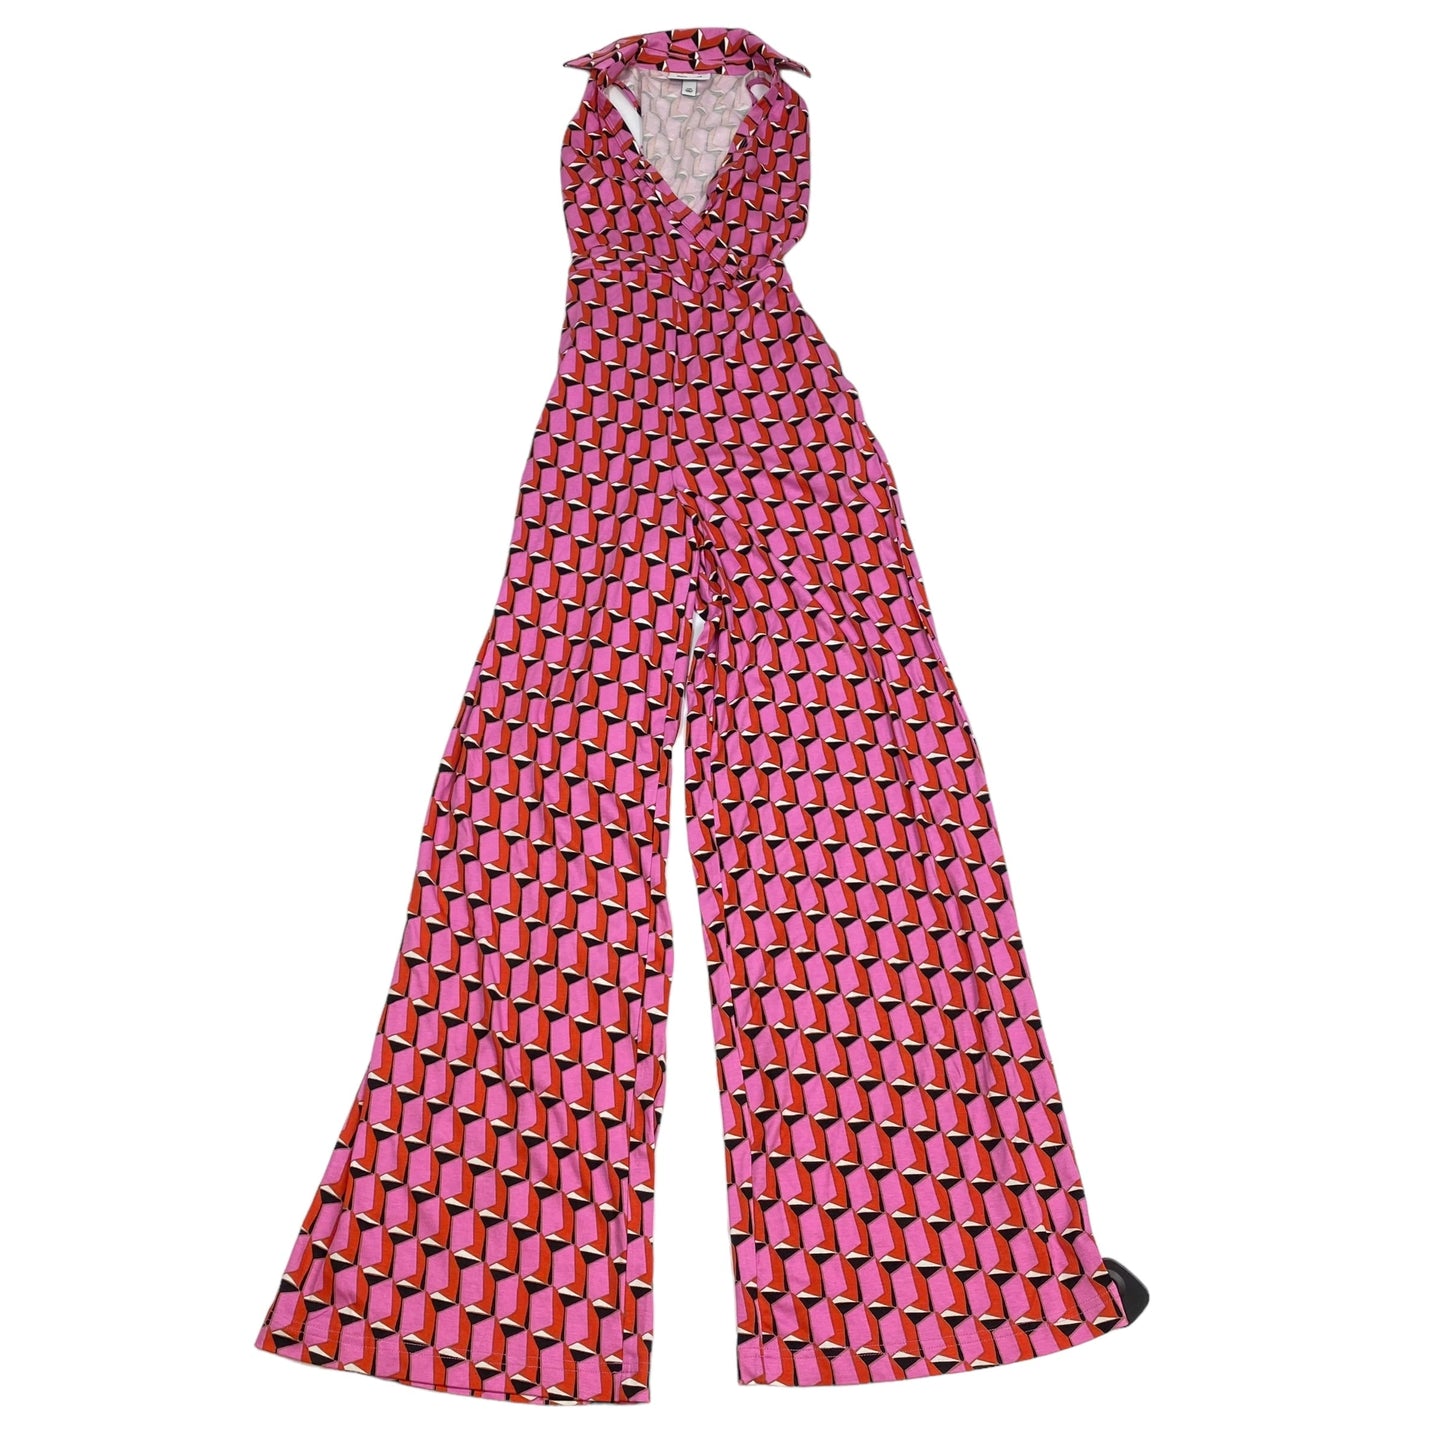 Pink Jumpsuit Target-designer, Size Xxs